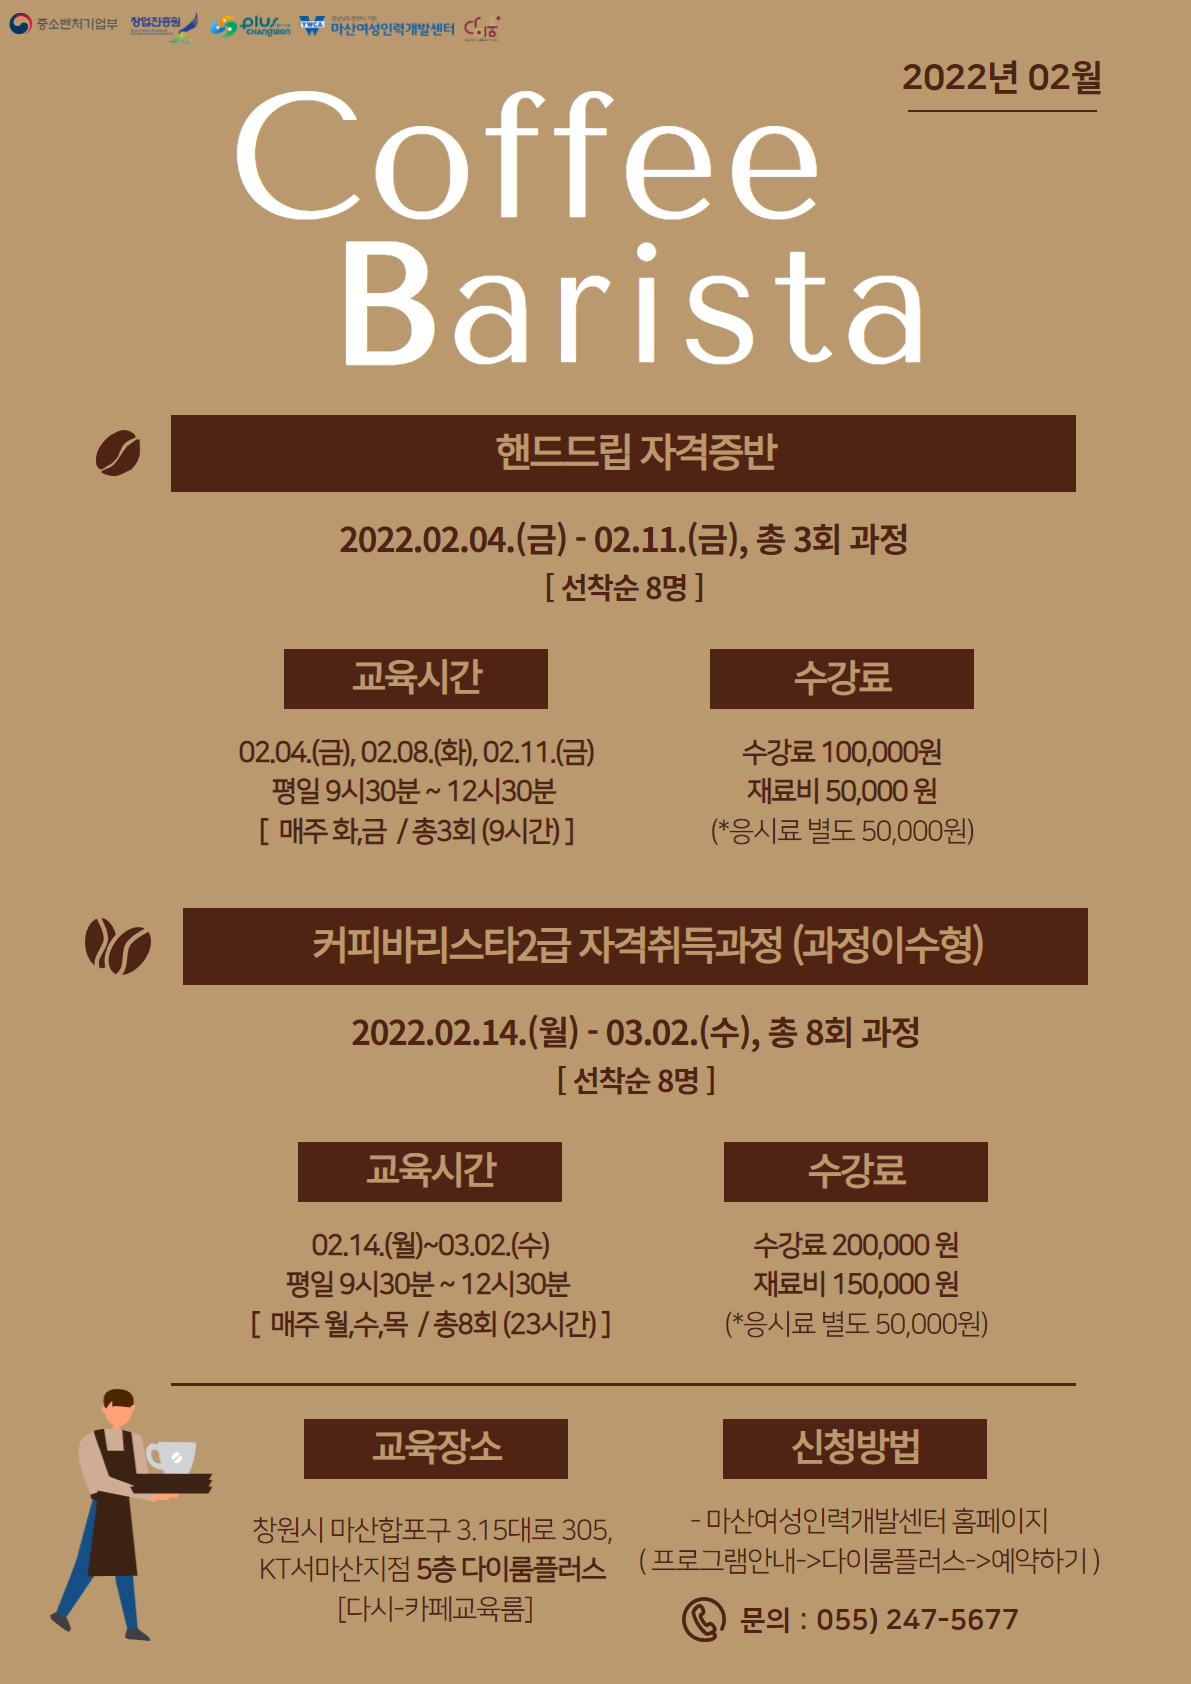 커피바리스타 2급 자격취득과정 (과정이수형)